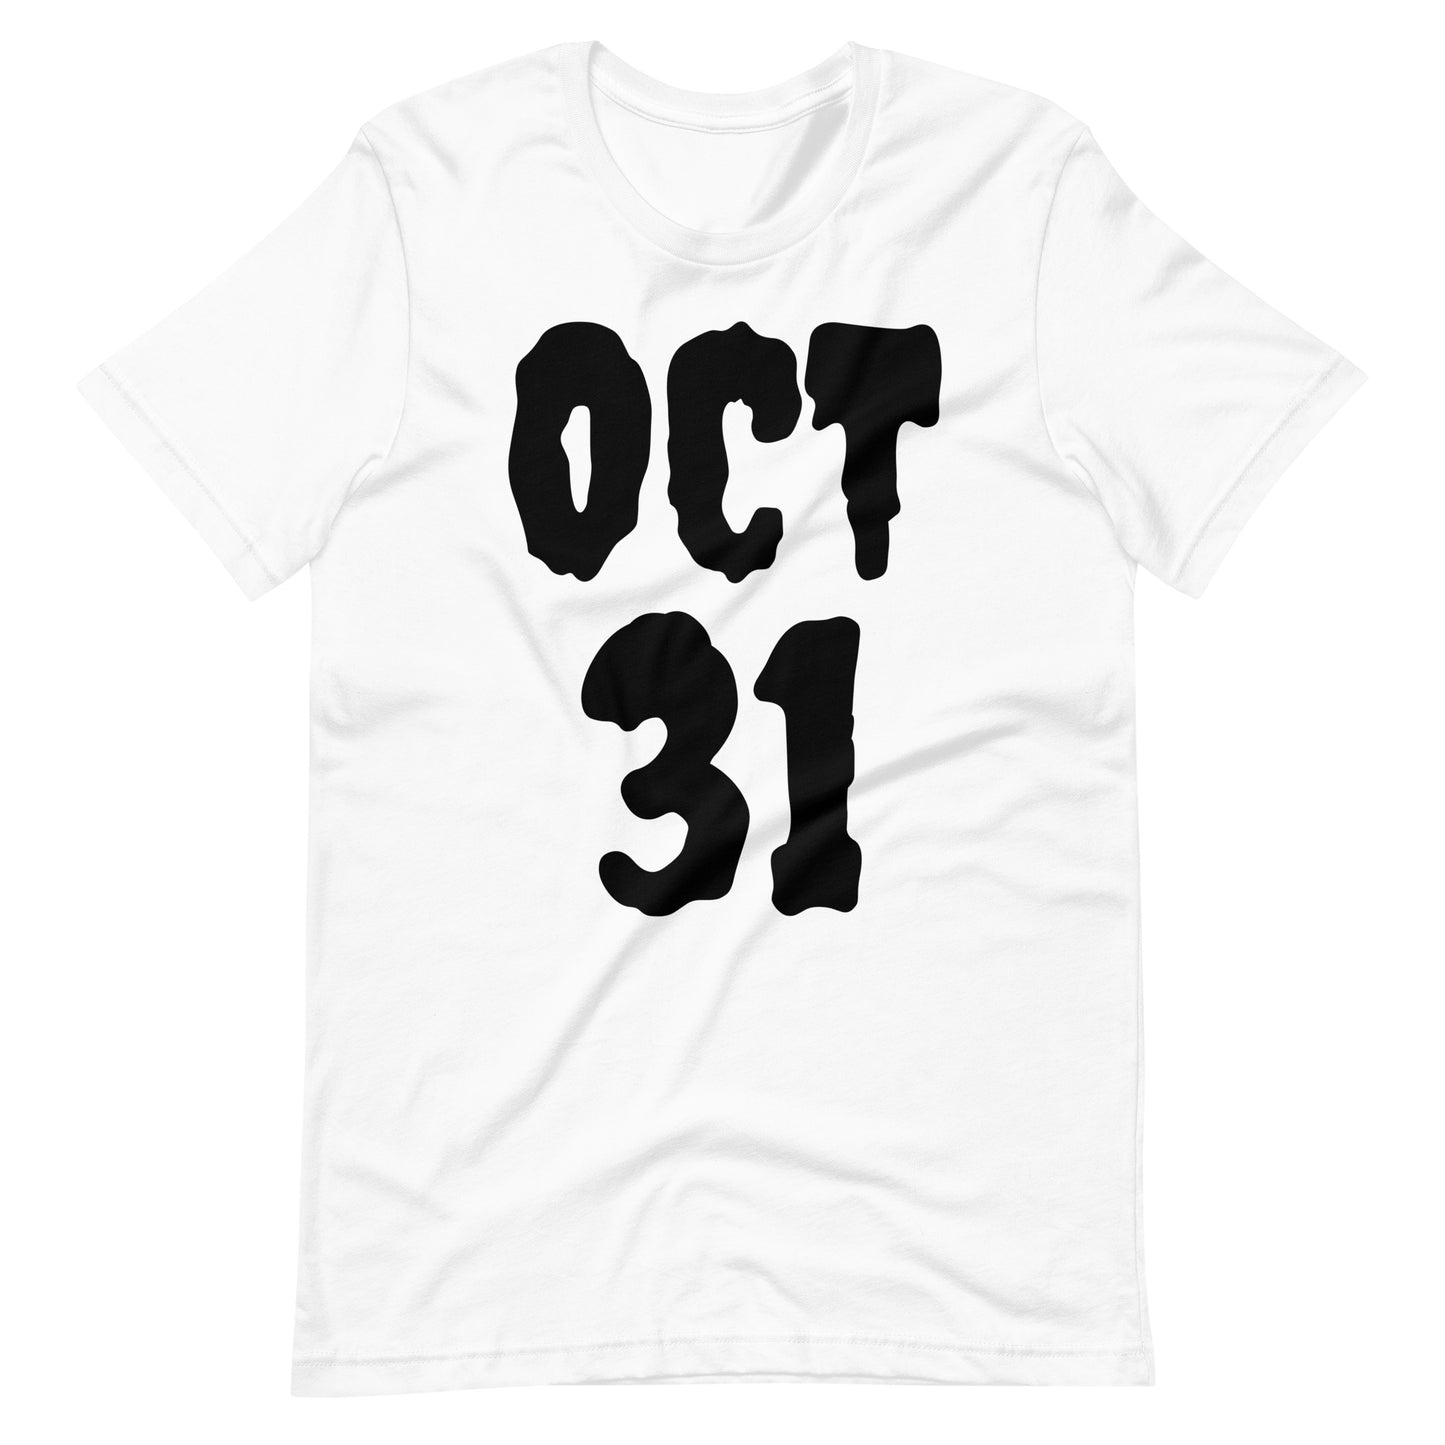 Halloween Oct 31 Shirt